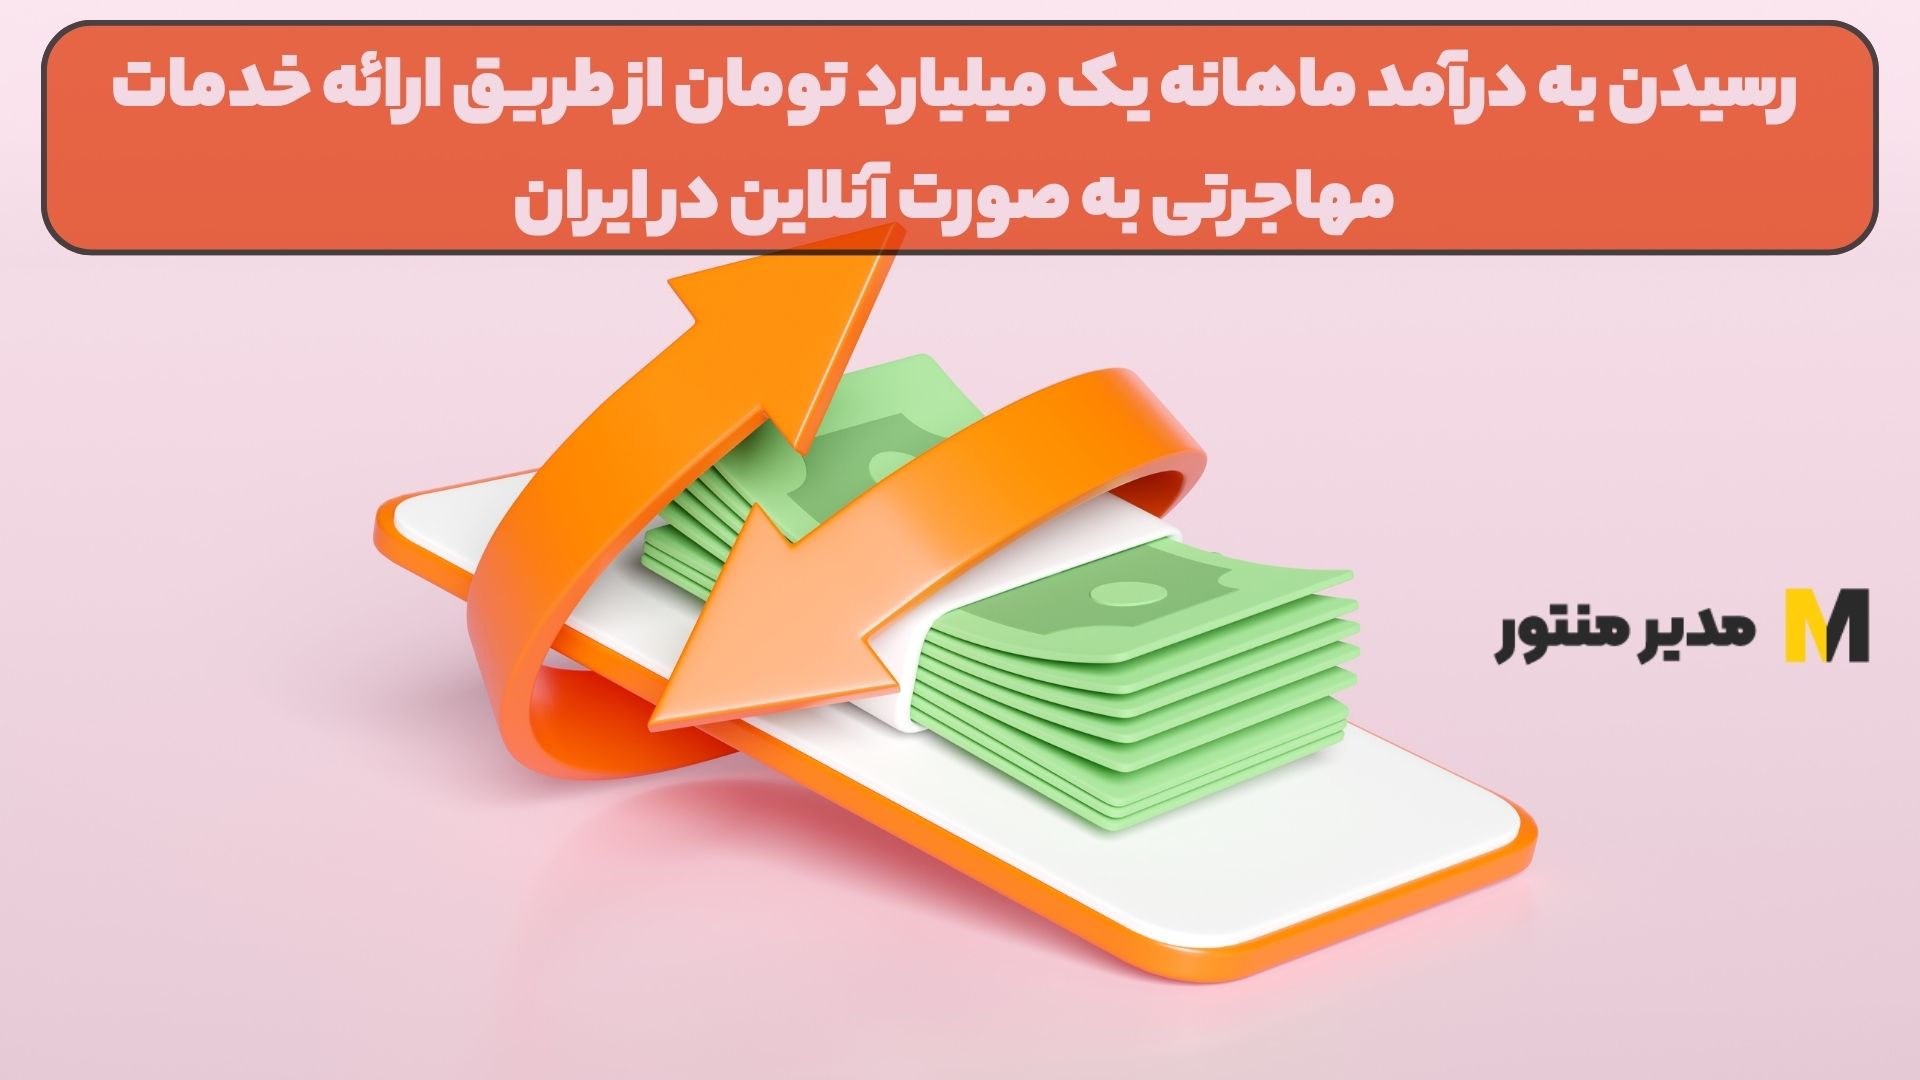 رسیدن به درآمد ماهانه یک میلیارد تومان از طریق ارائه خدمات مهاجرتی به صورت آنلاین در ایران